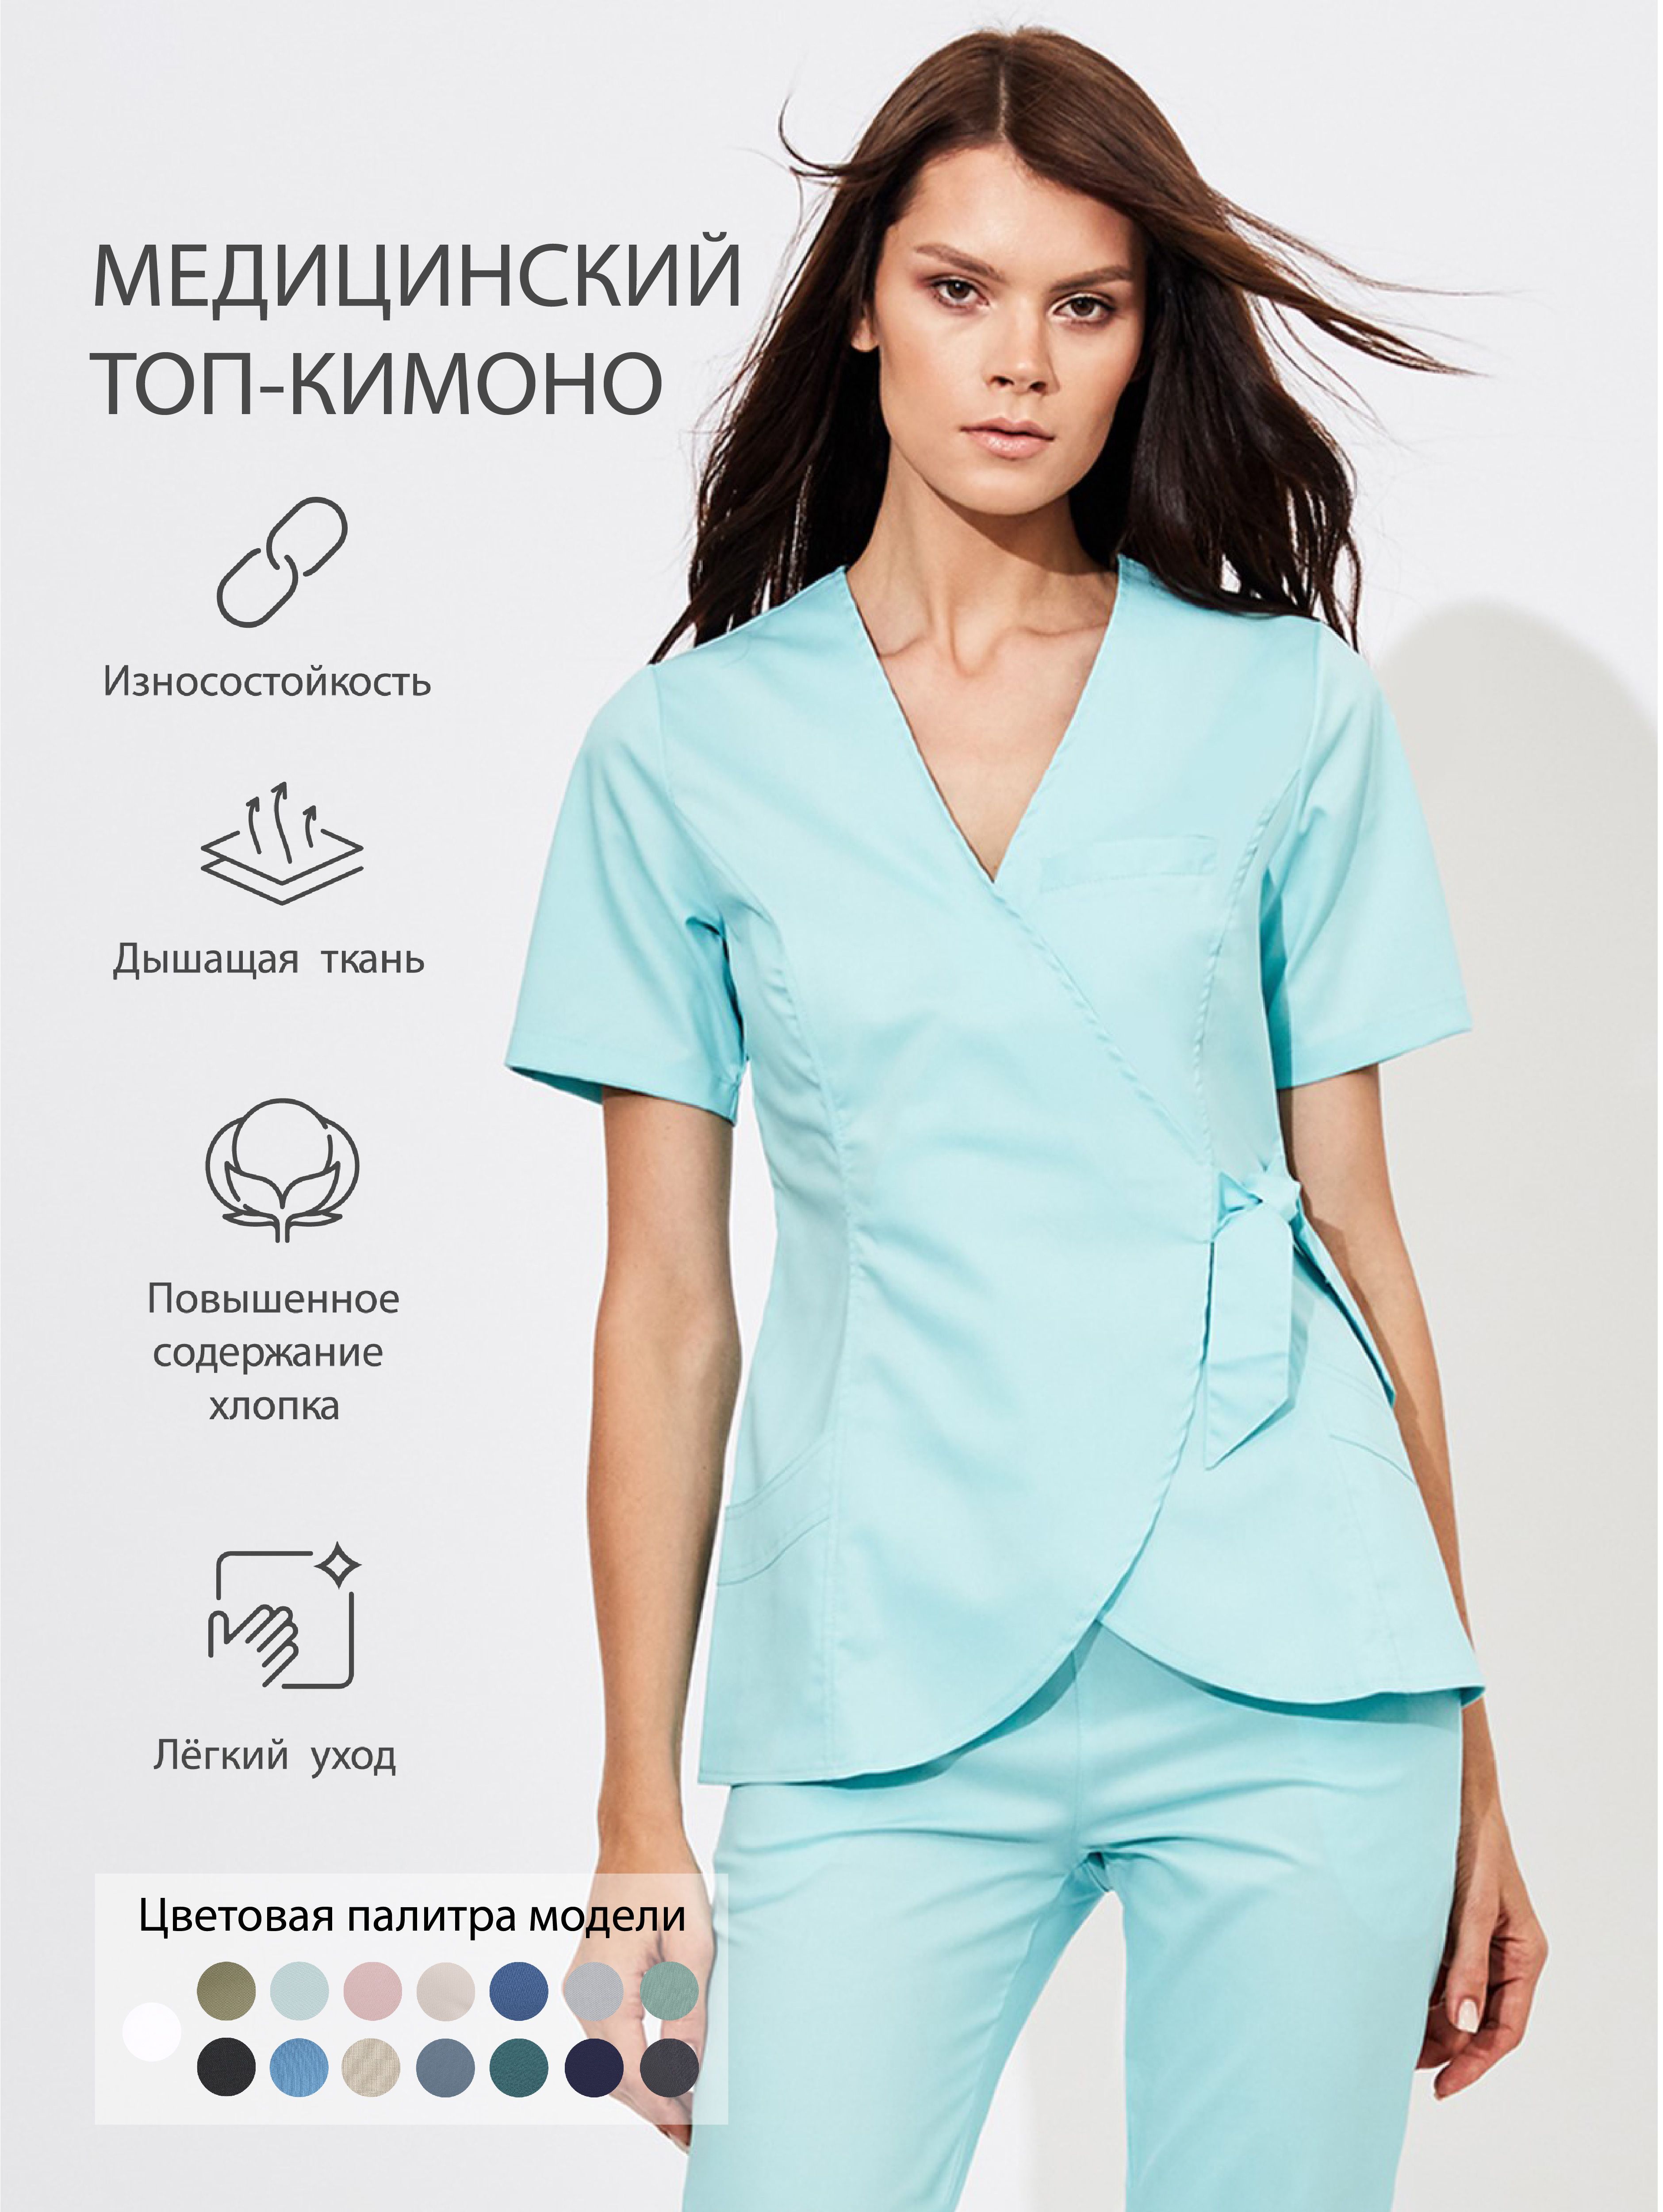 Сайт медицинской одежды модный. Медицинский топ-кимоно женский Medcostume. Костюм медицинский женский. Костюм хирургический женский. Медицинский костюм женский модный.